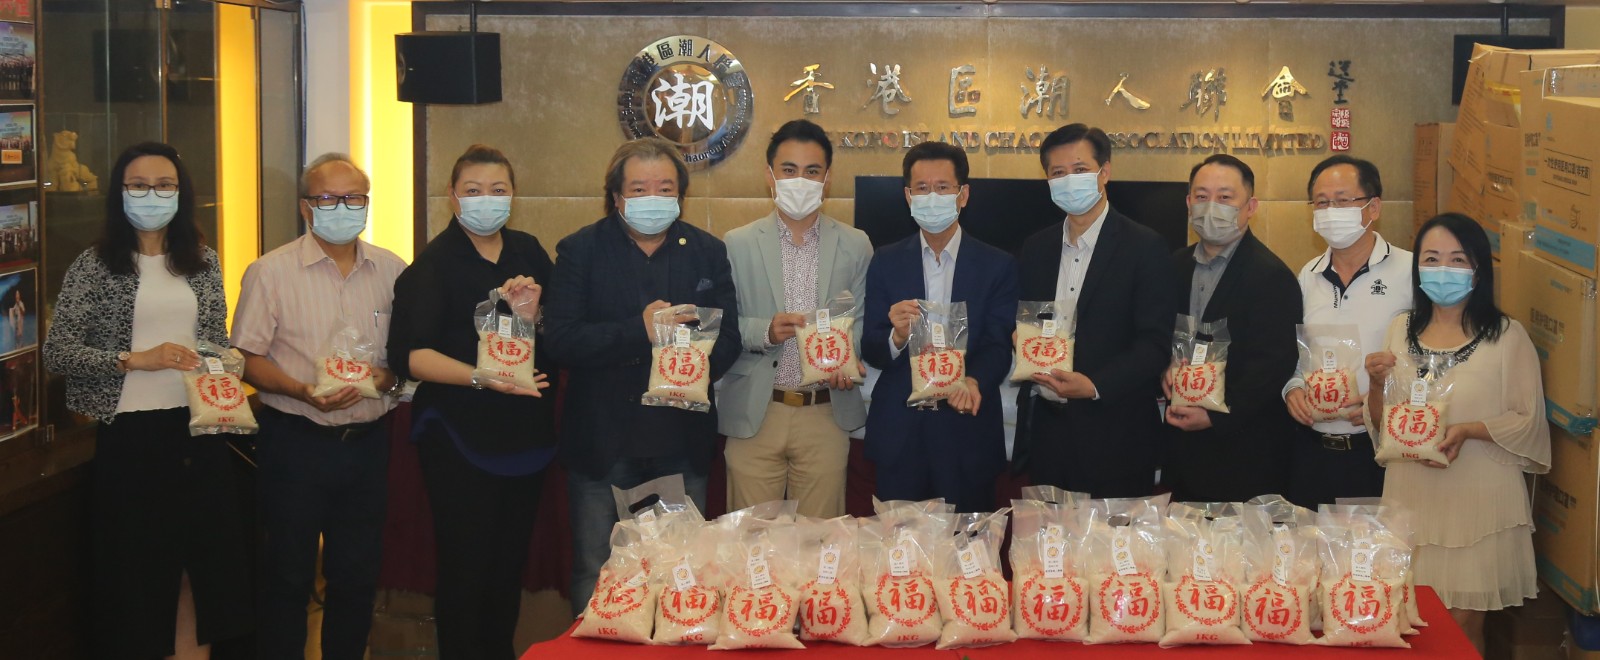 香港區潮人聯會舉辦福米贈送儀式-8